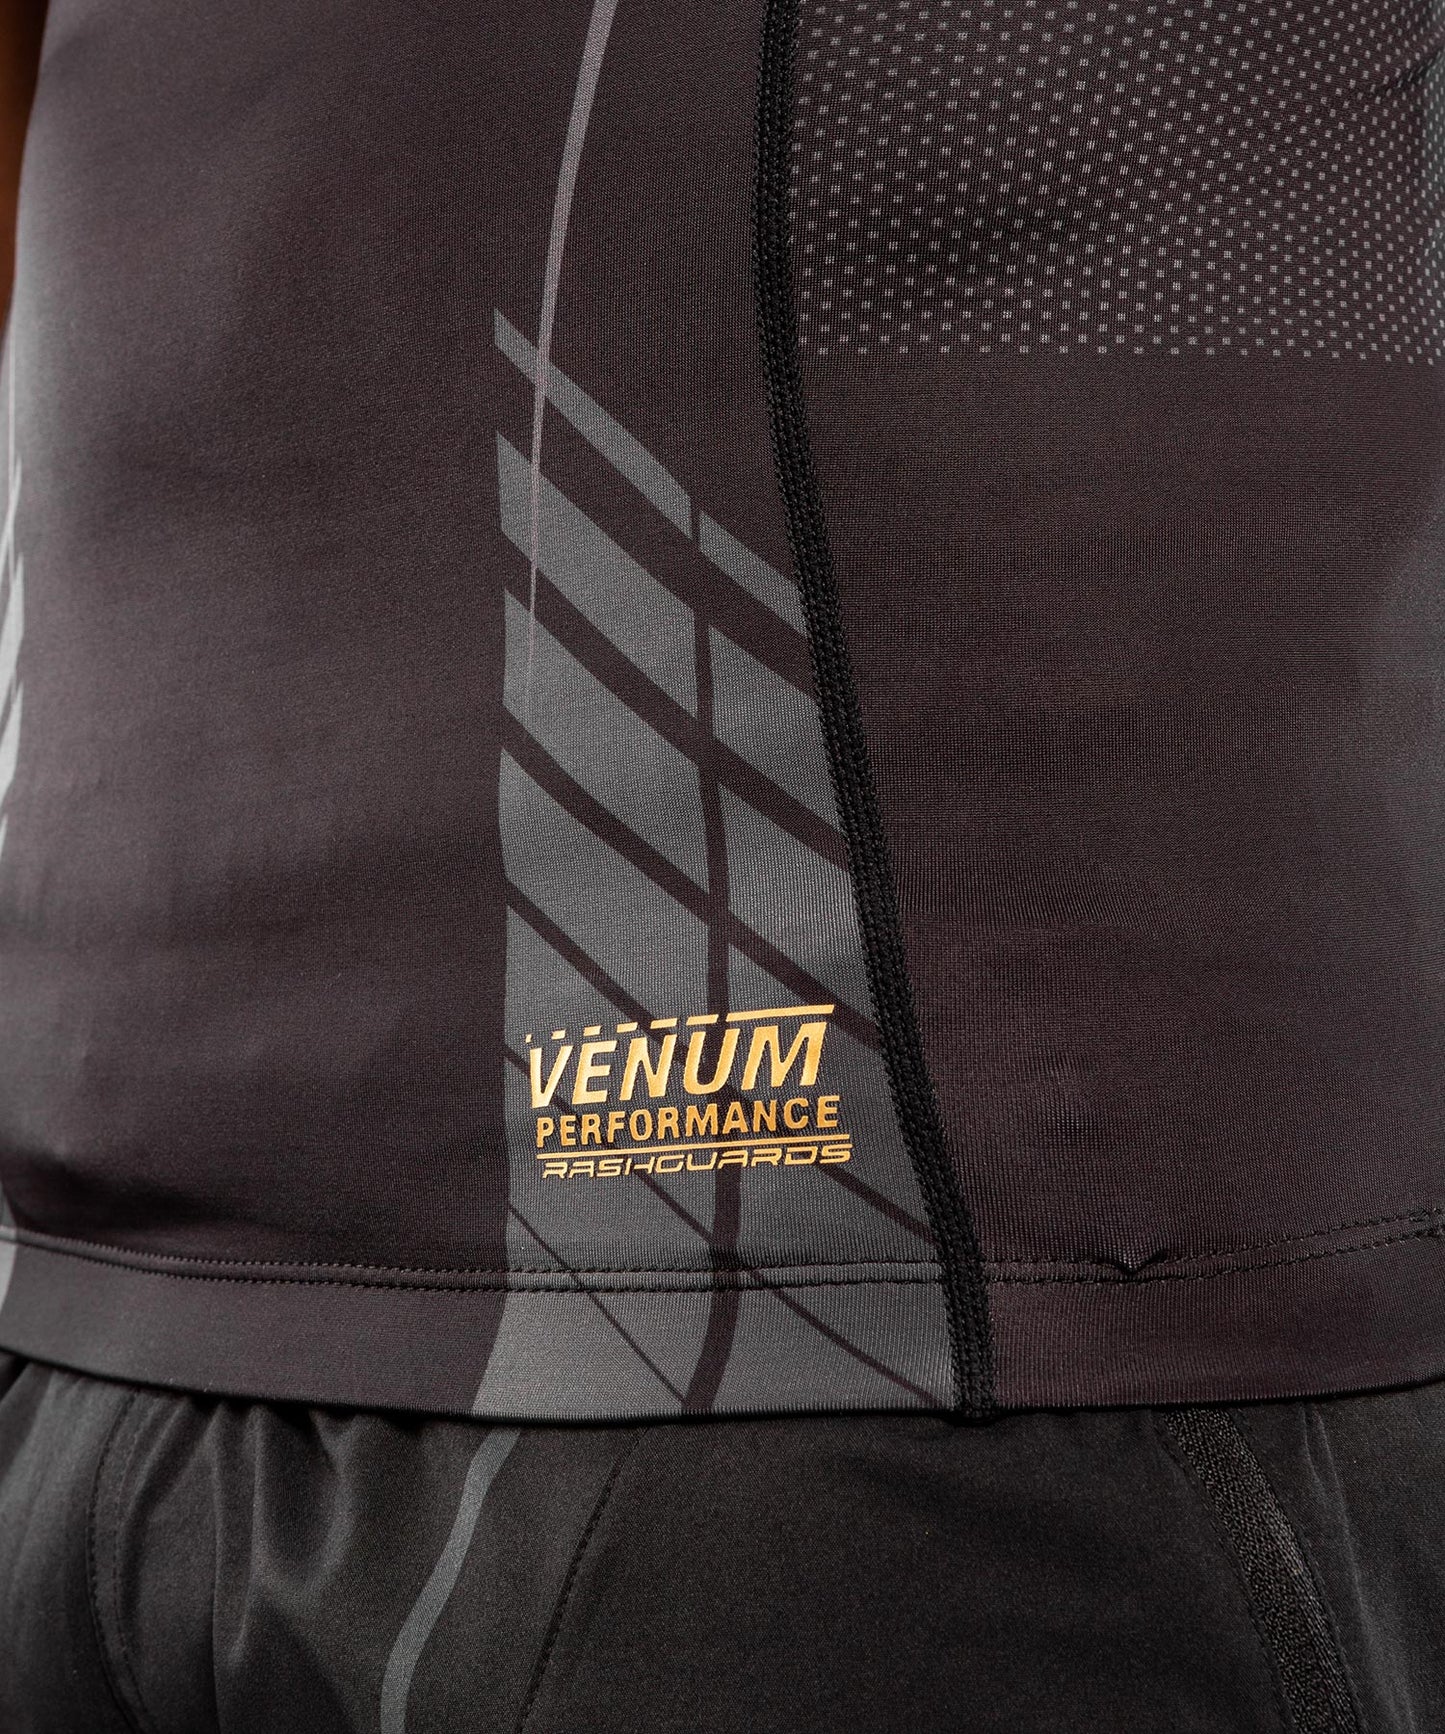 Camiseta sin mangas de compresión Venum Athletics - Negro/Dorado